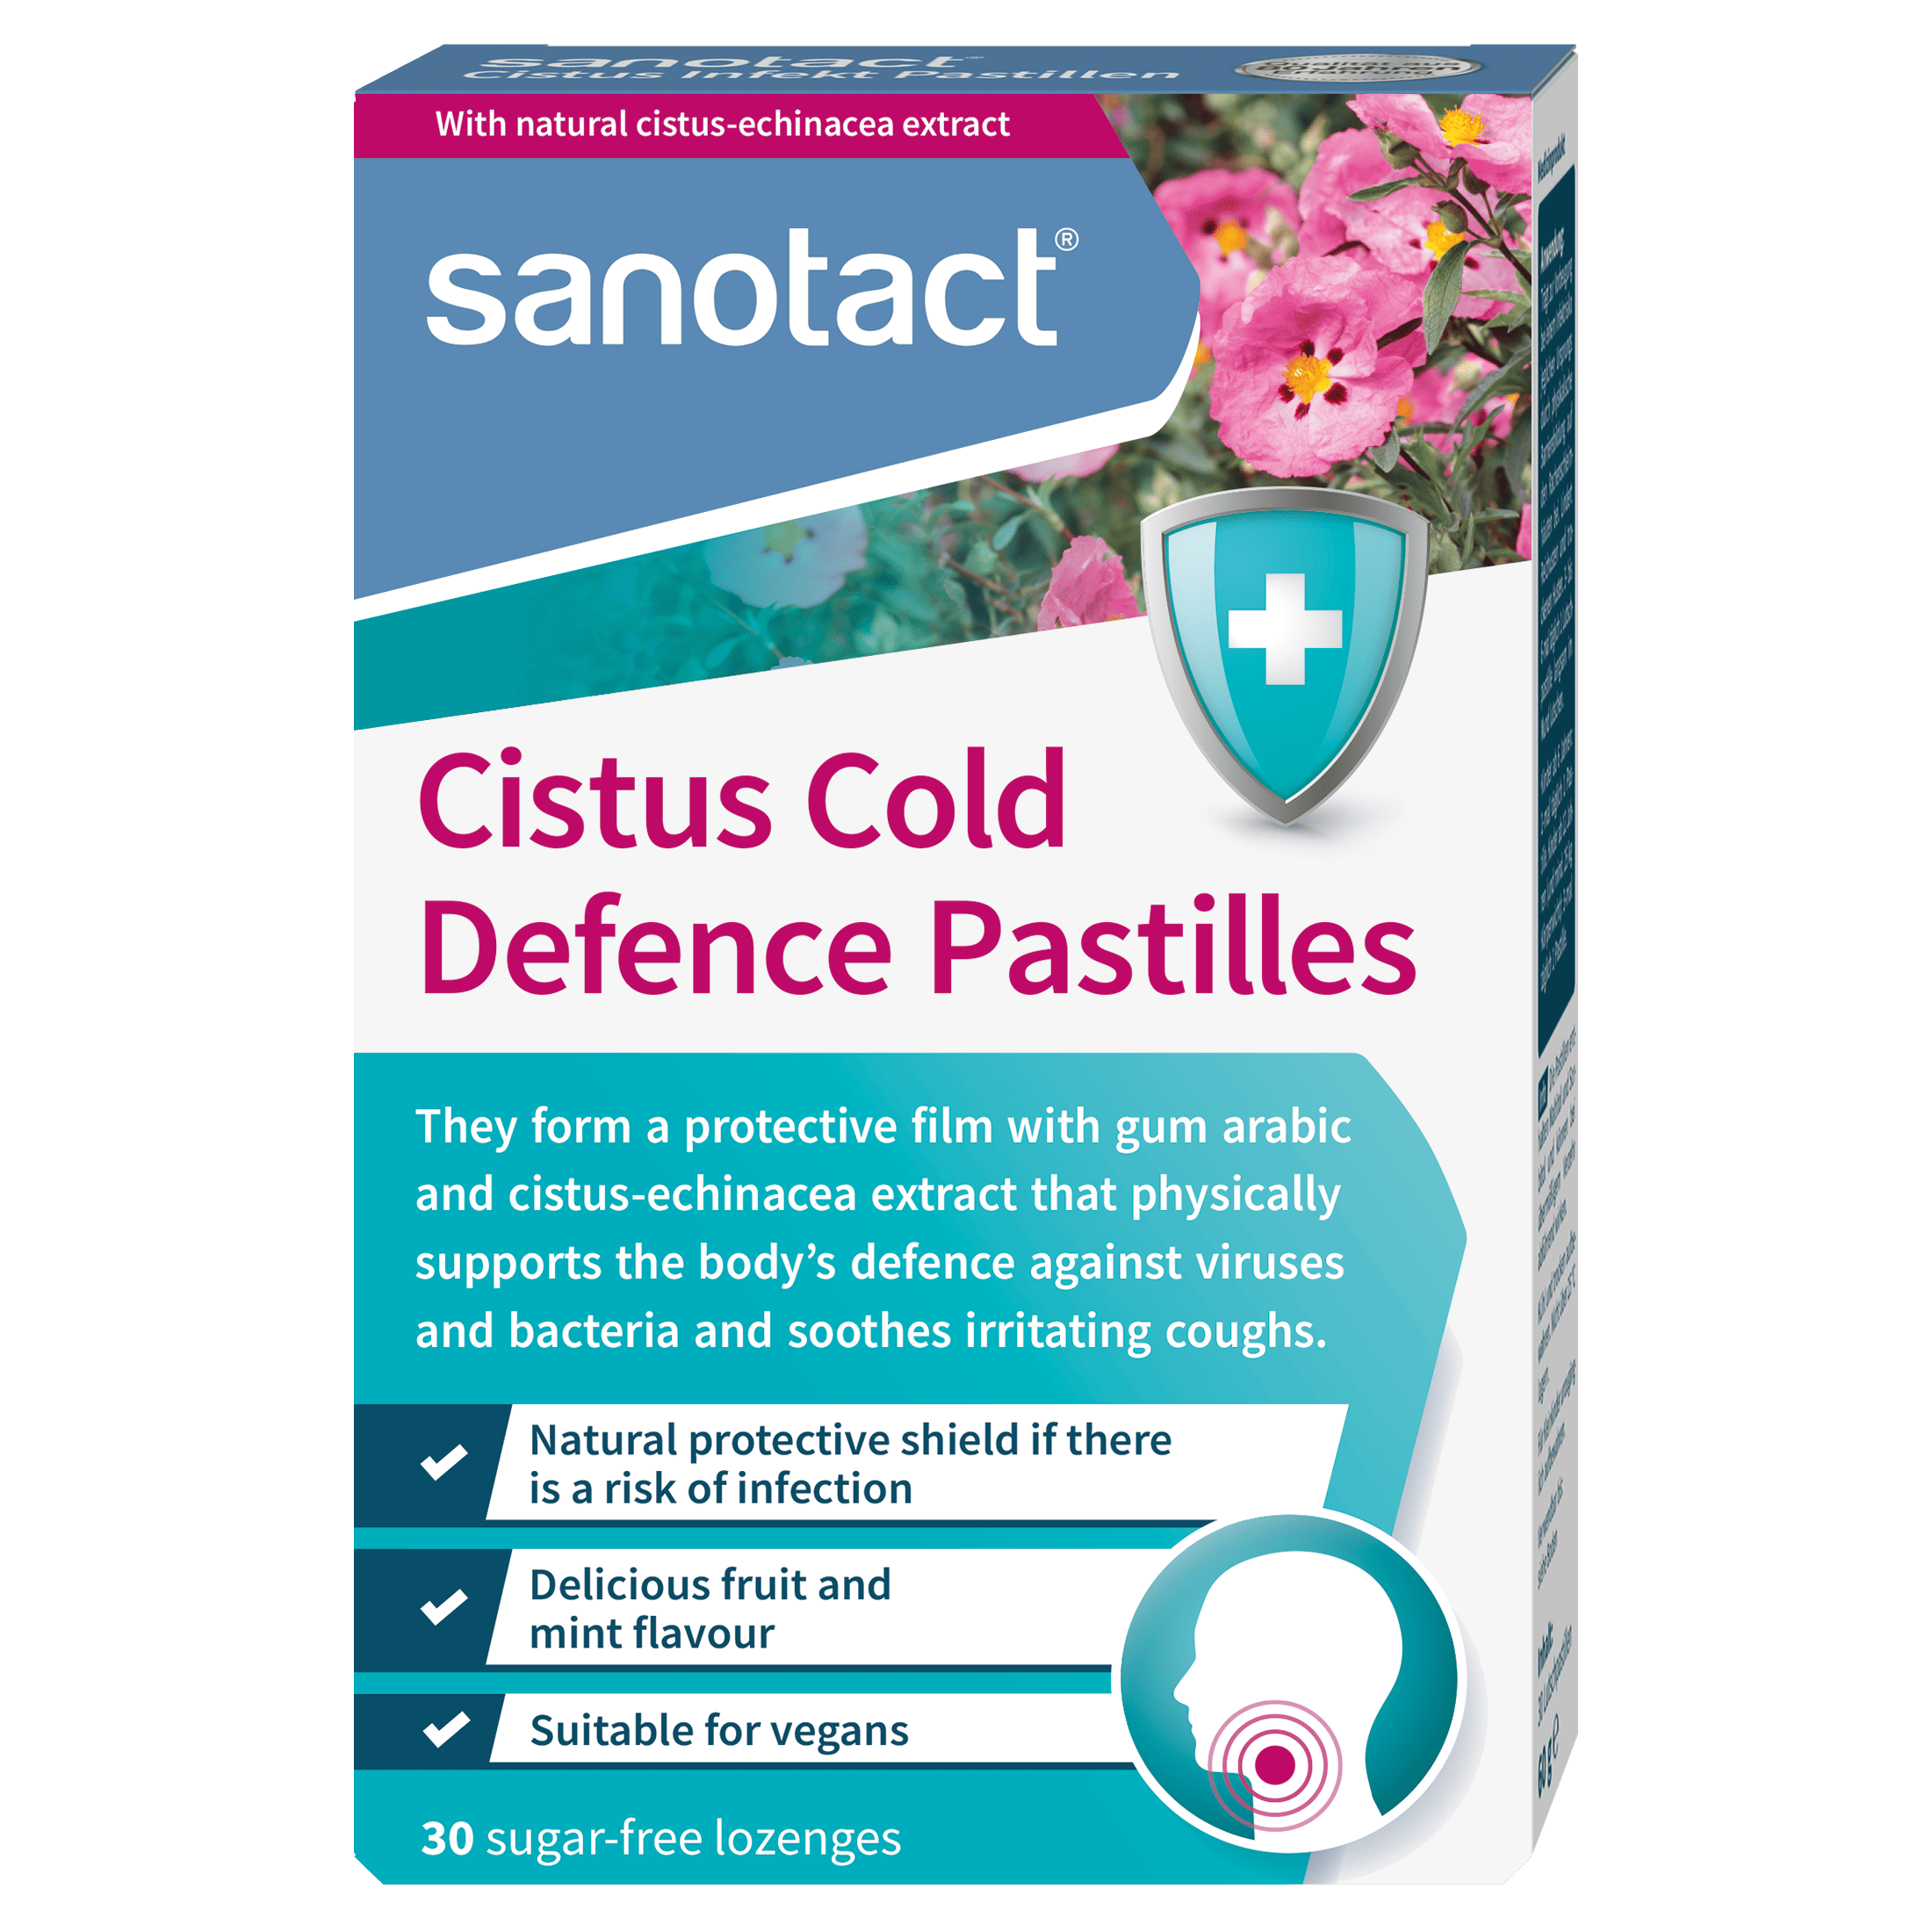 Cistus Cold Defence Pastilles